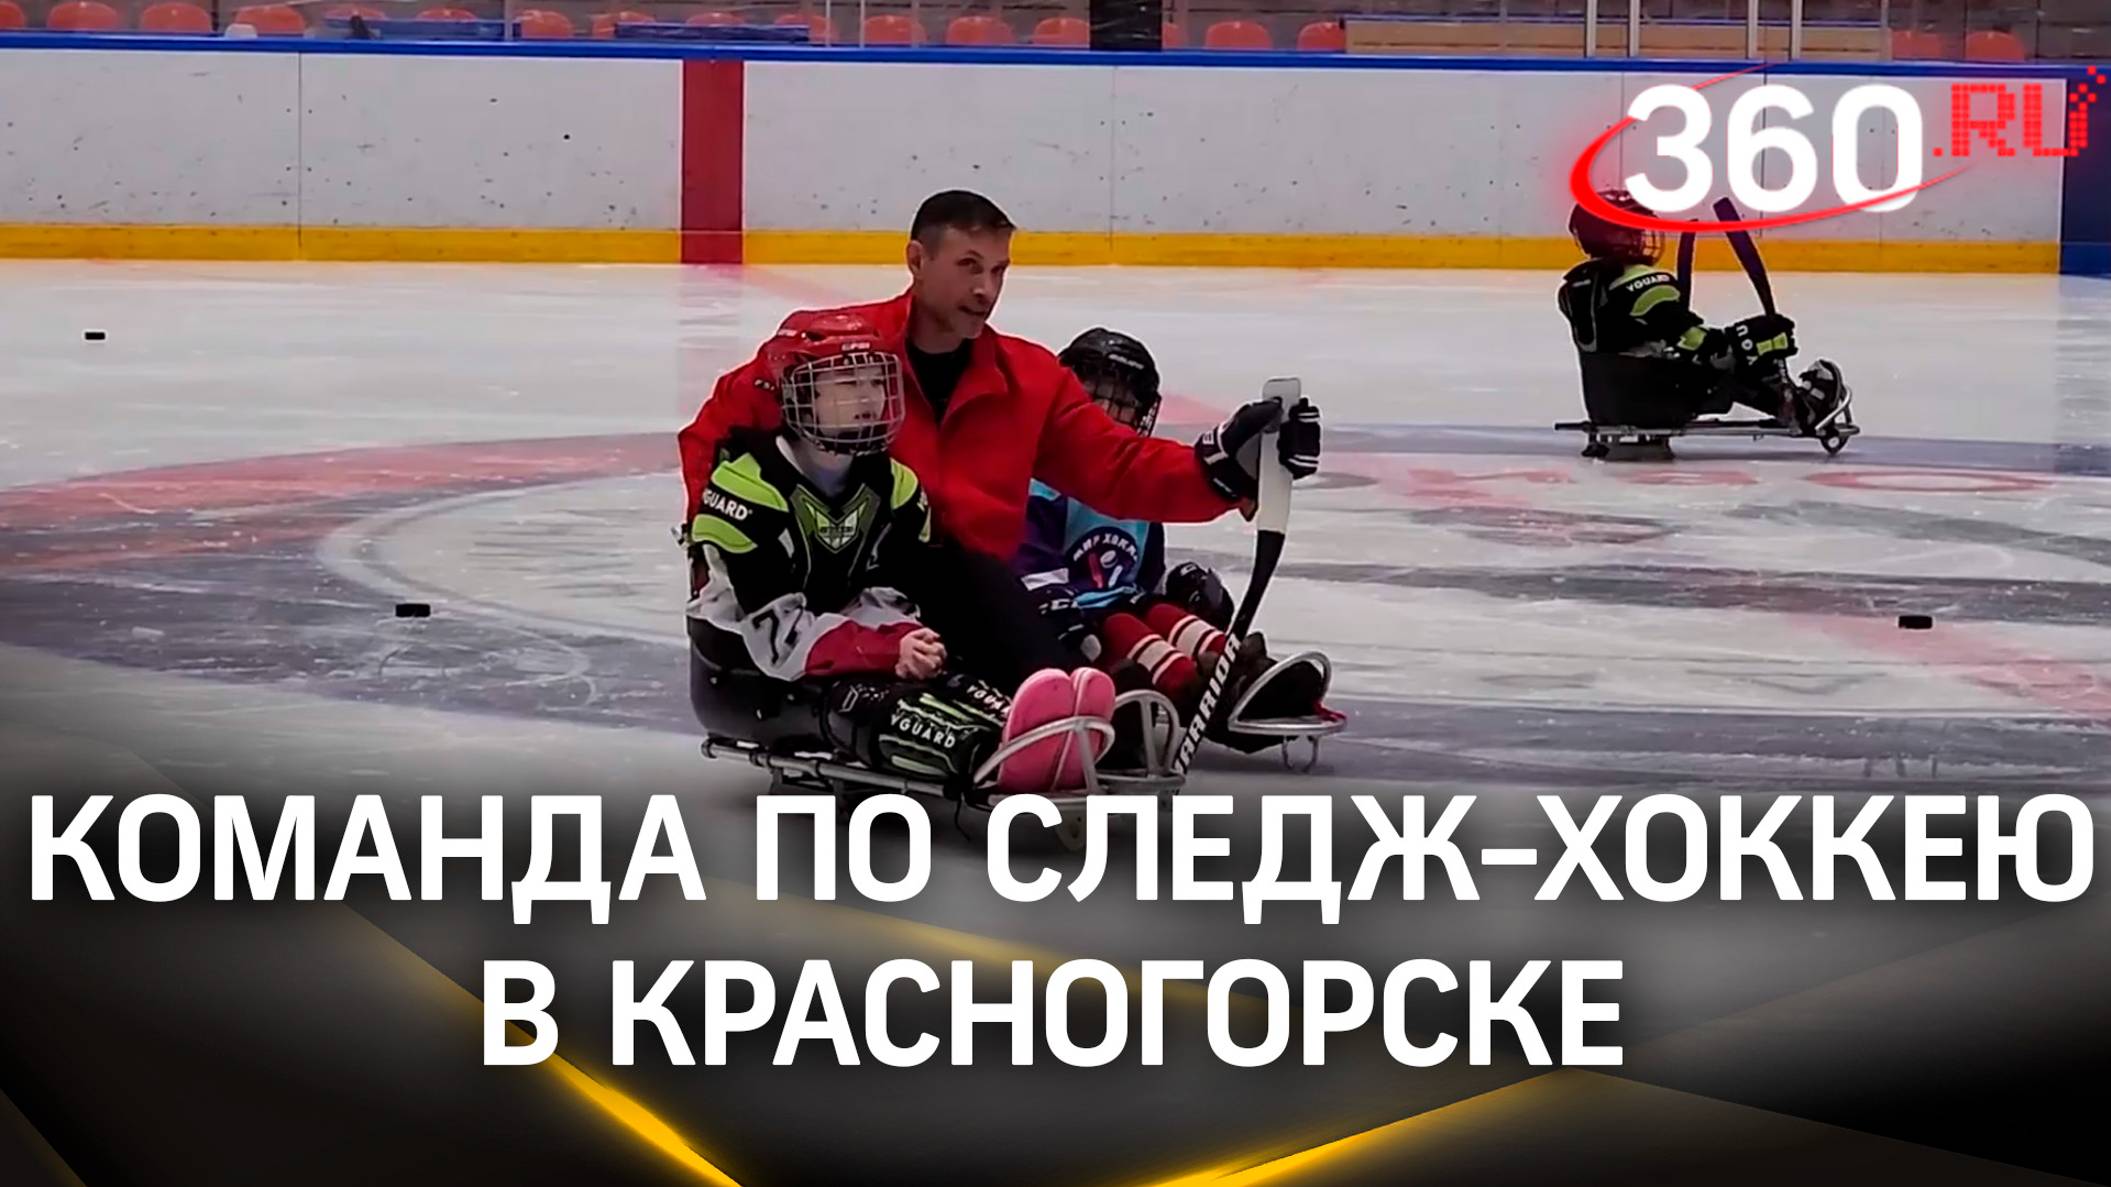 Команда по следж-хоккею появилась в Красногорске